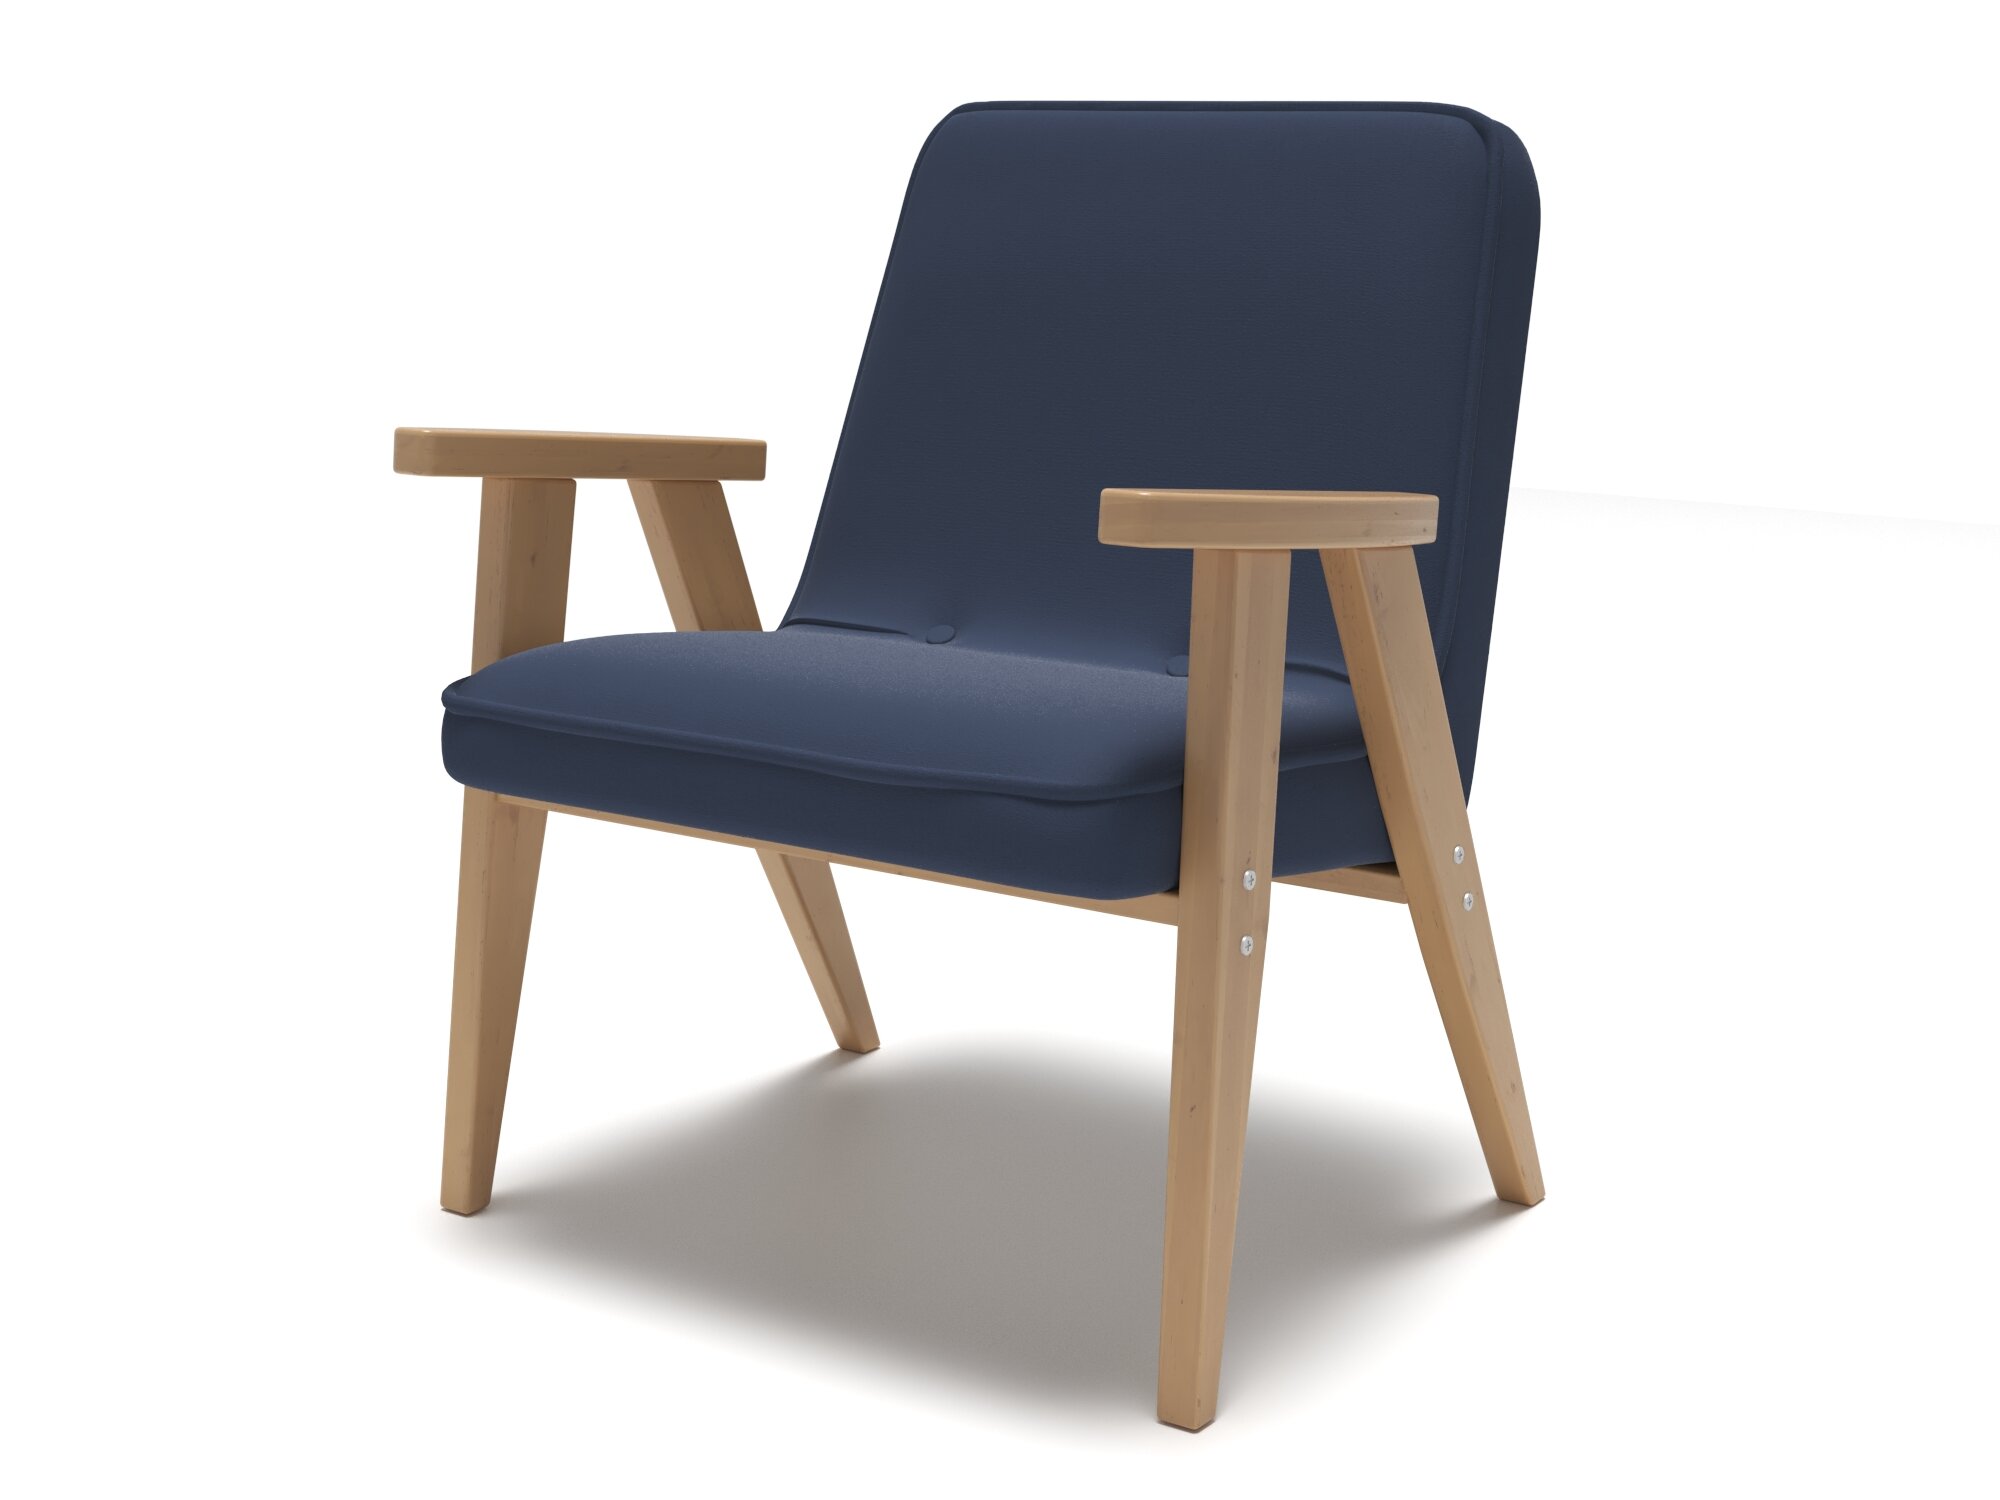 Мягкий стул кресло Soft Element Джек Blue с подлокотниками и спинкой, вельвет, стиль скандинавский лофт, кухонный, в гостиную, на балкон